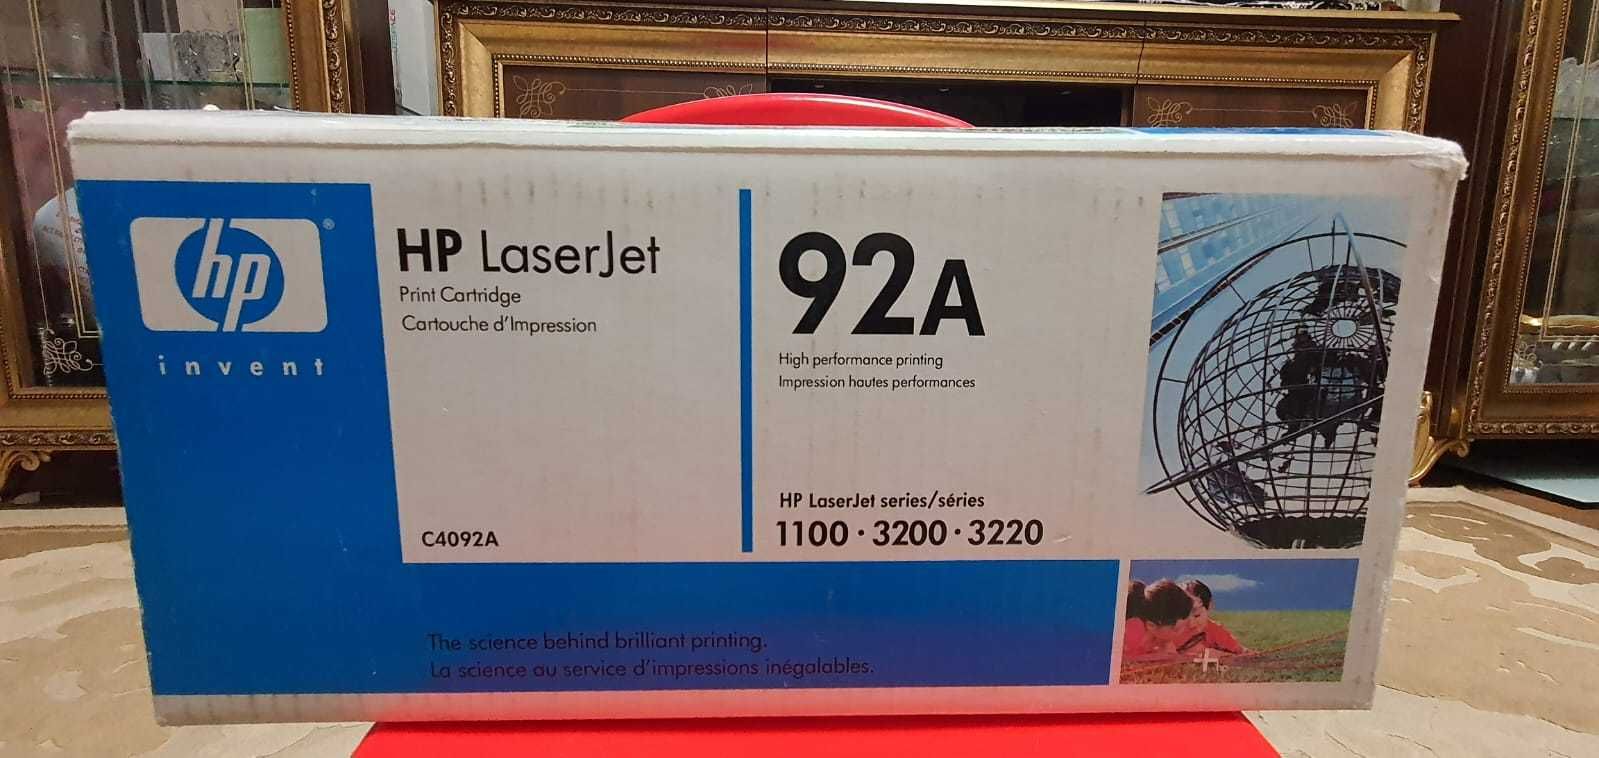 Оригинальный картридж HP для принтера C4092A